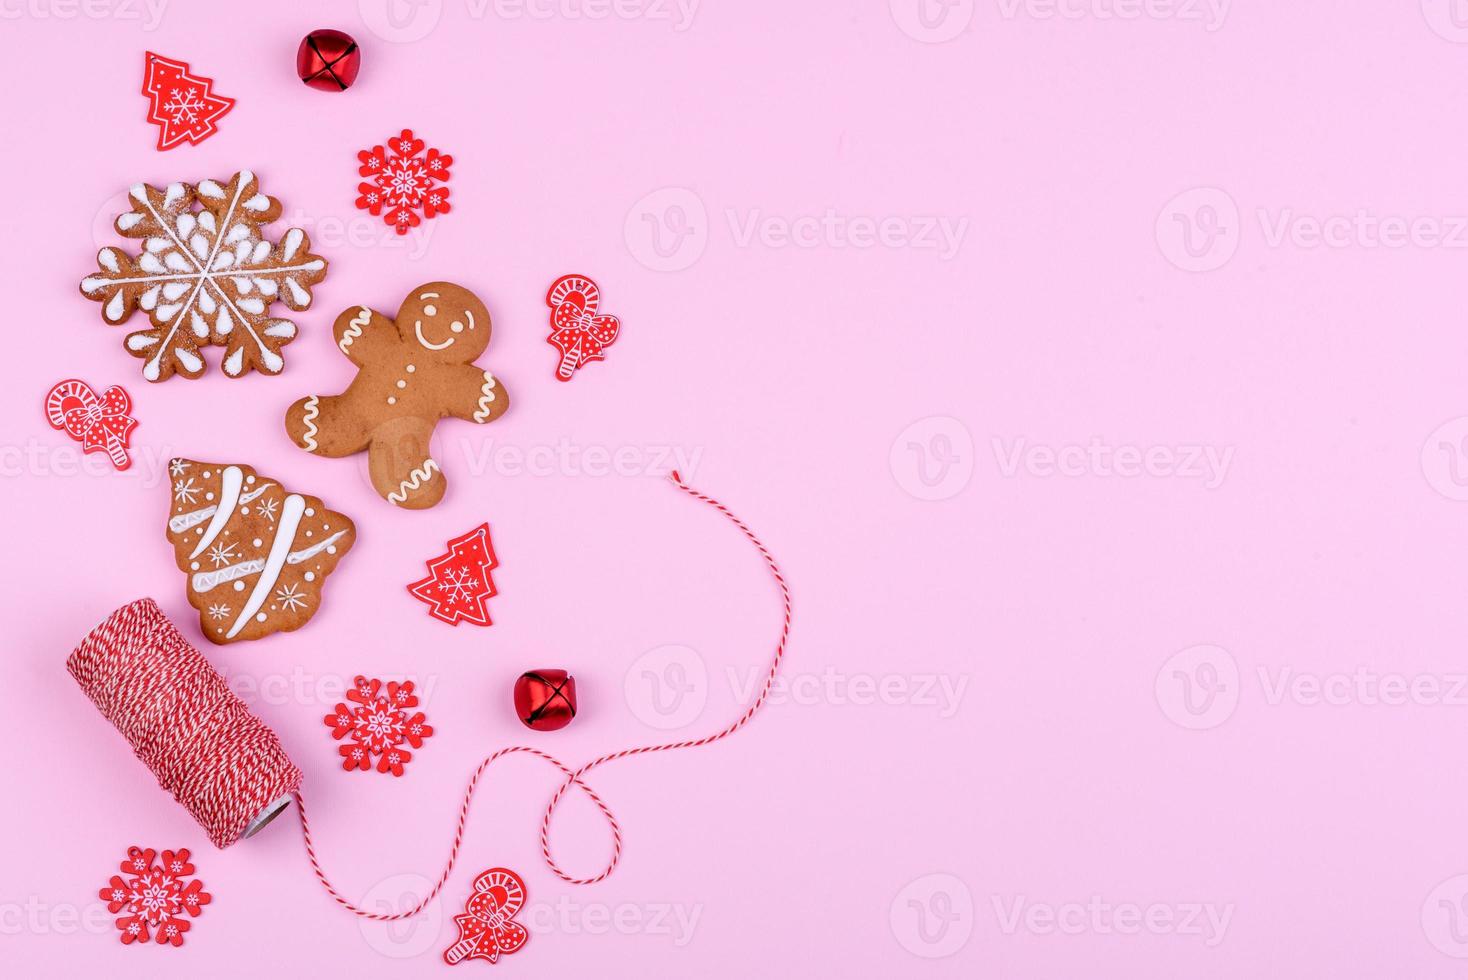 kerst feestelijke peperkoek thuis gemaakt op een gekleurde achtergrond foto